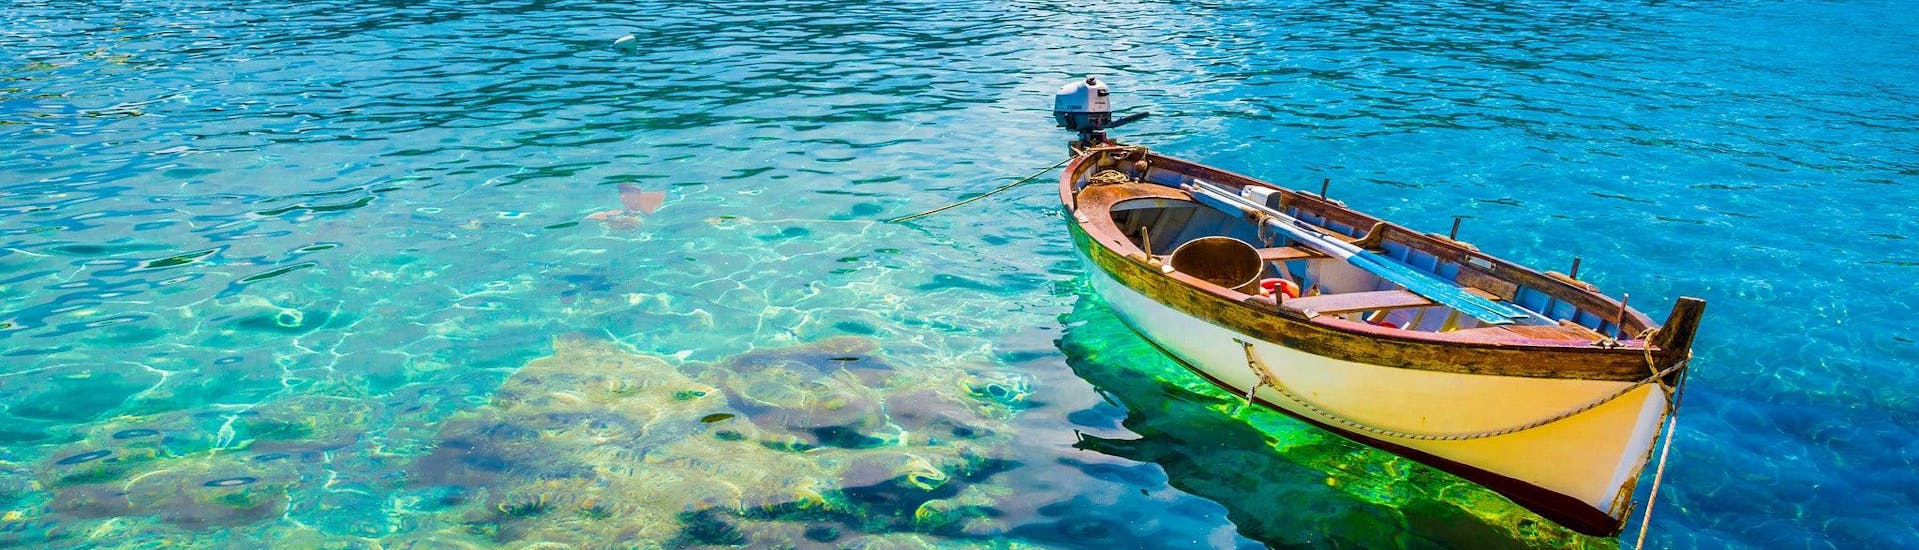 Una barca nelle chiare acque di Fetovaia, una destinazione gettonata per le gite in barca.